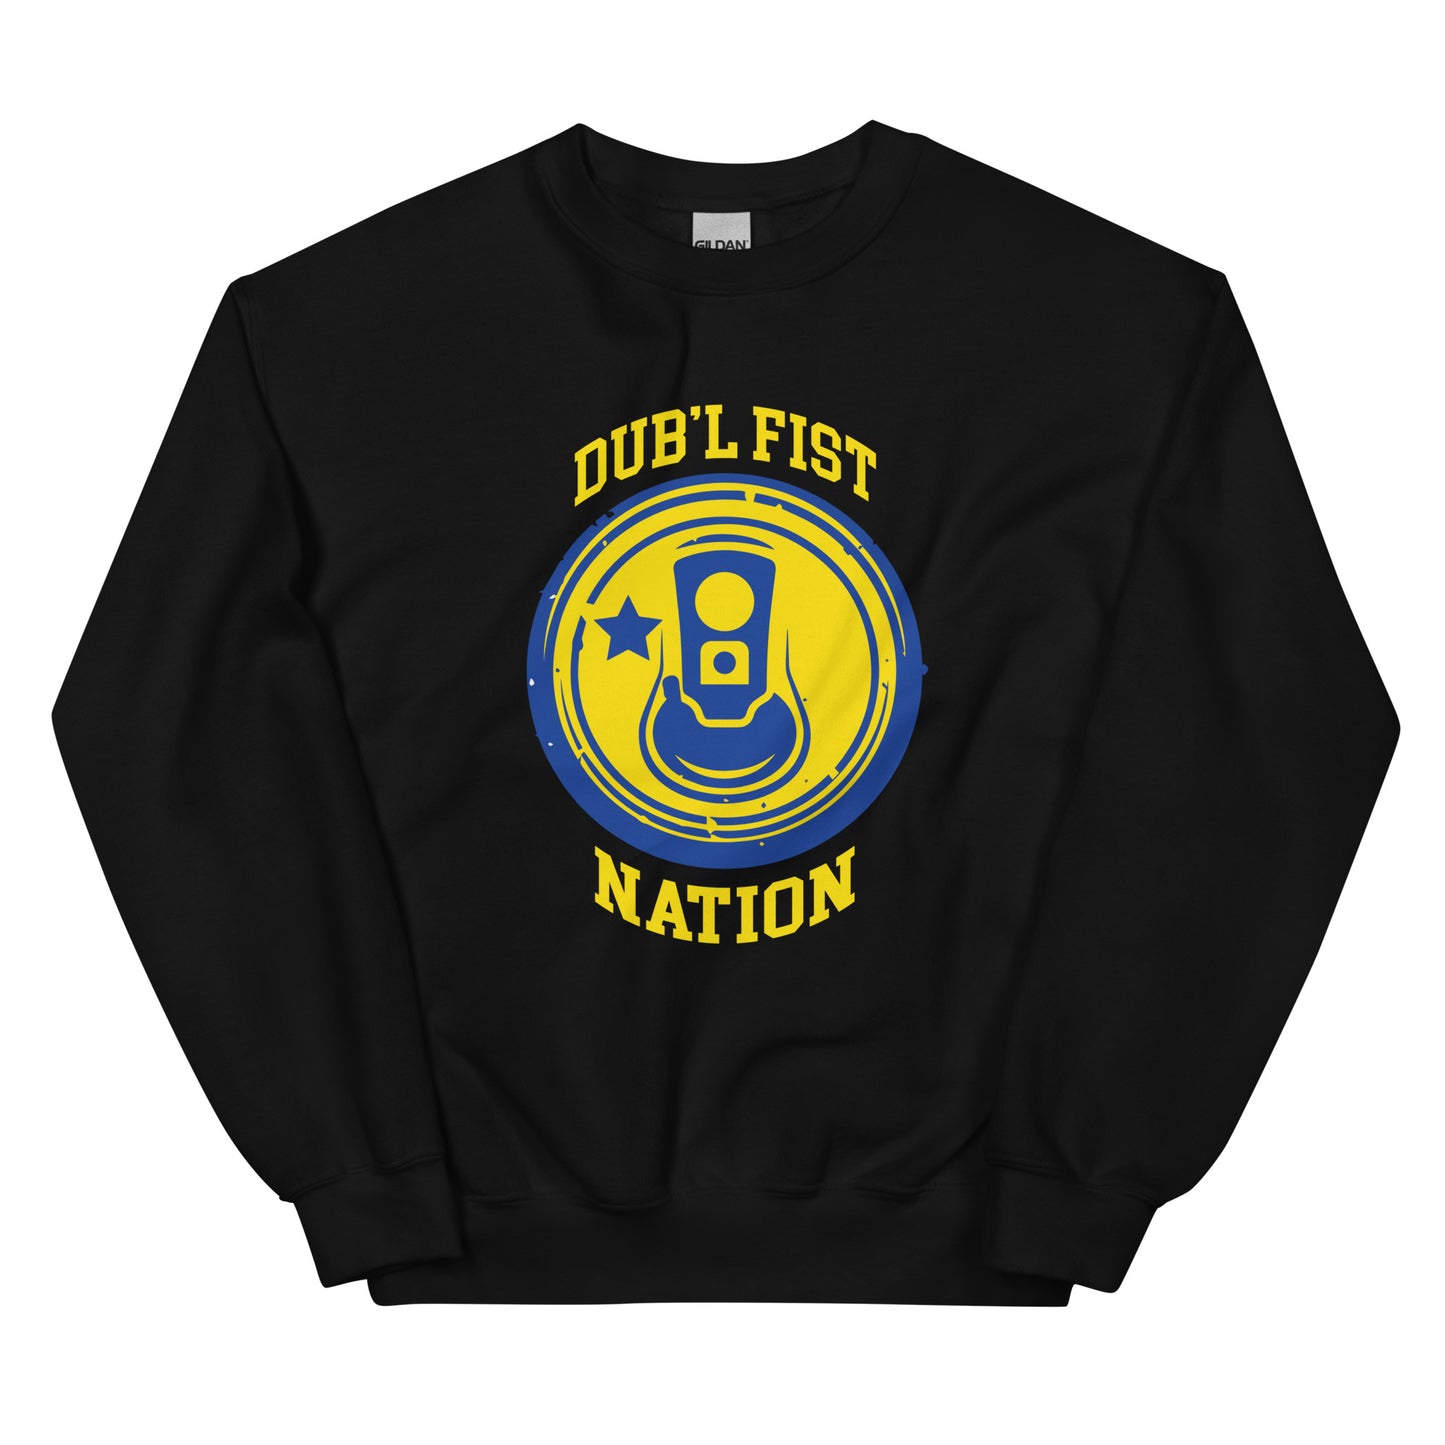 Dub'l Fist Nation Sweatshirt